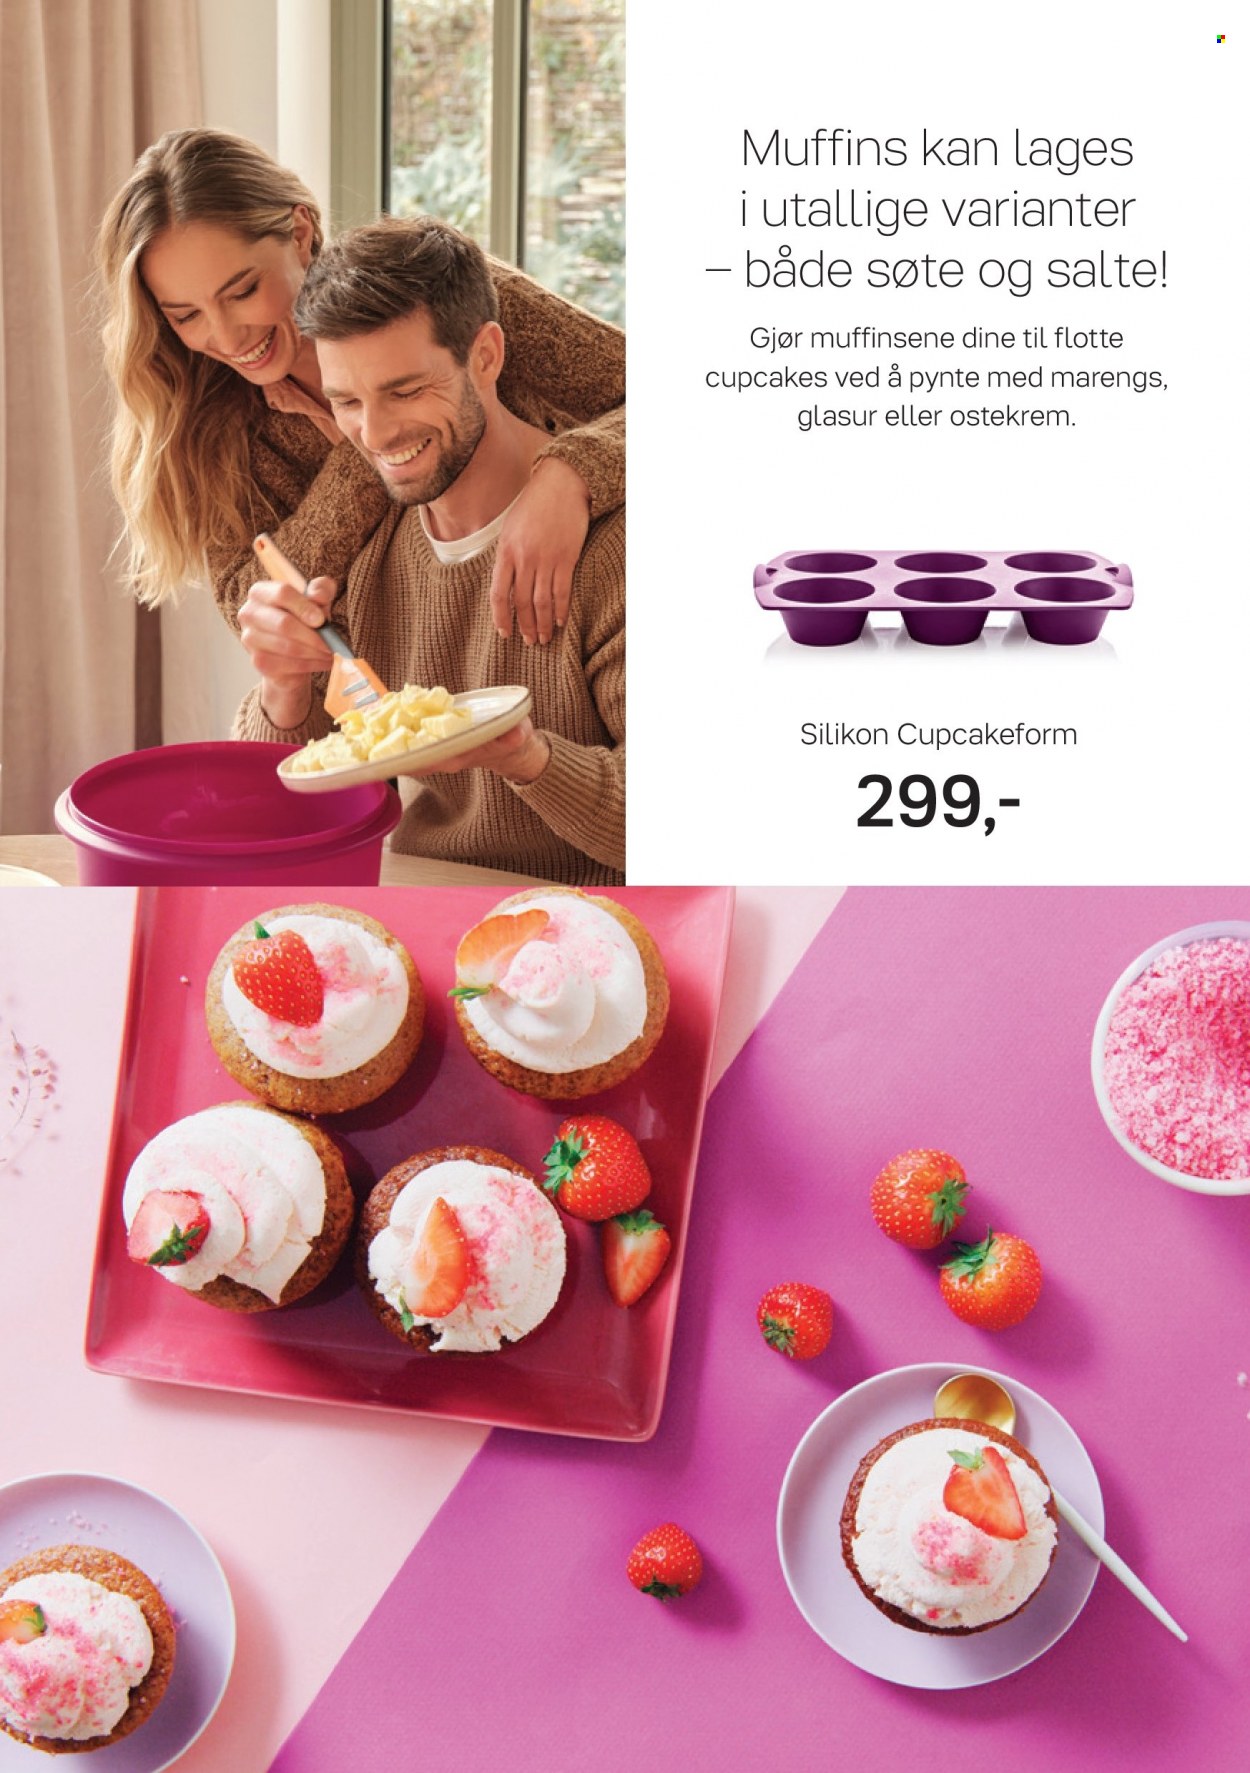 Kundeavis Tupperware - Produkter fra tilbudsaviser - marengs, muffins, cupcakes. Side 7.